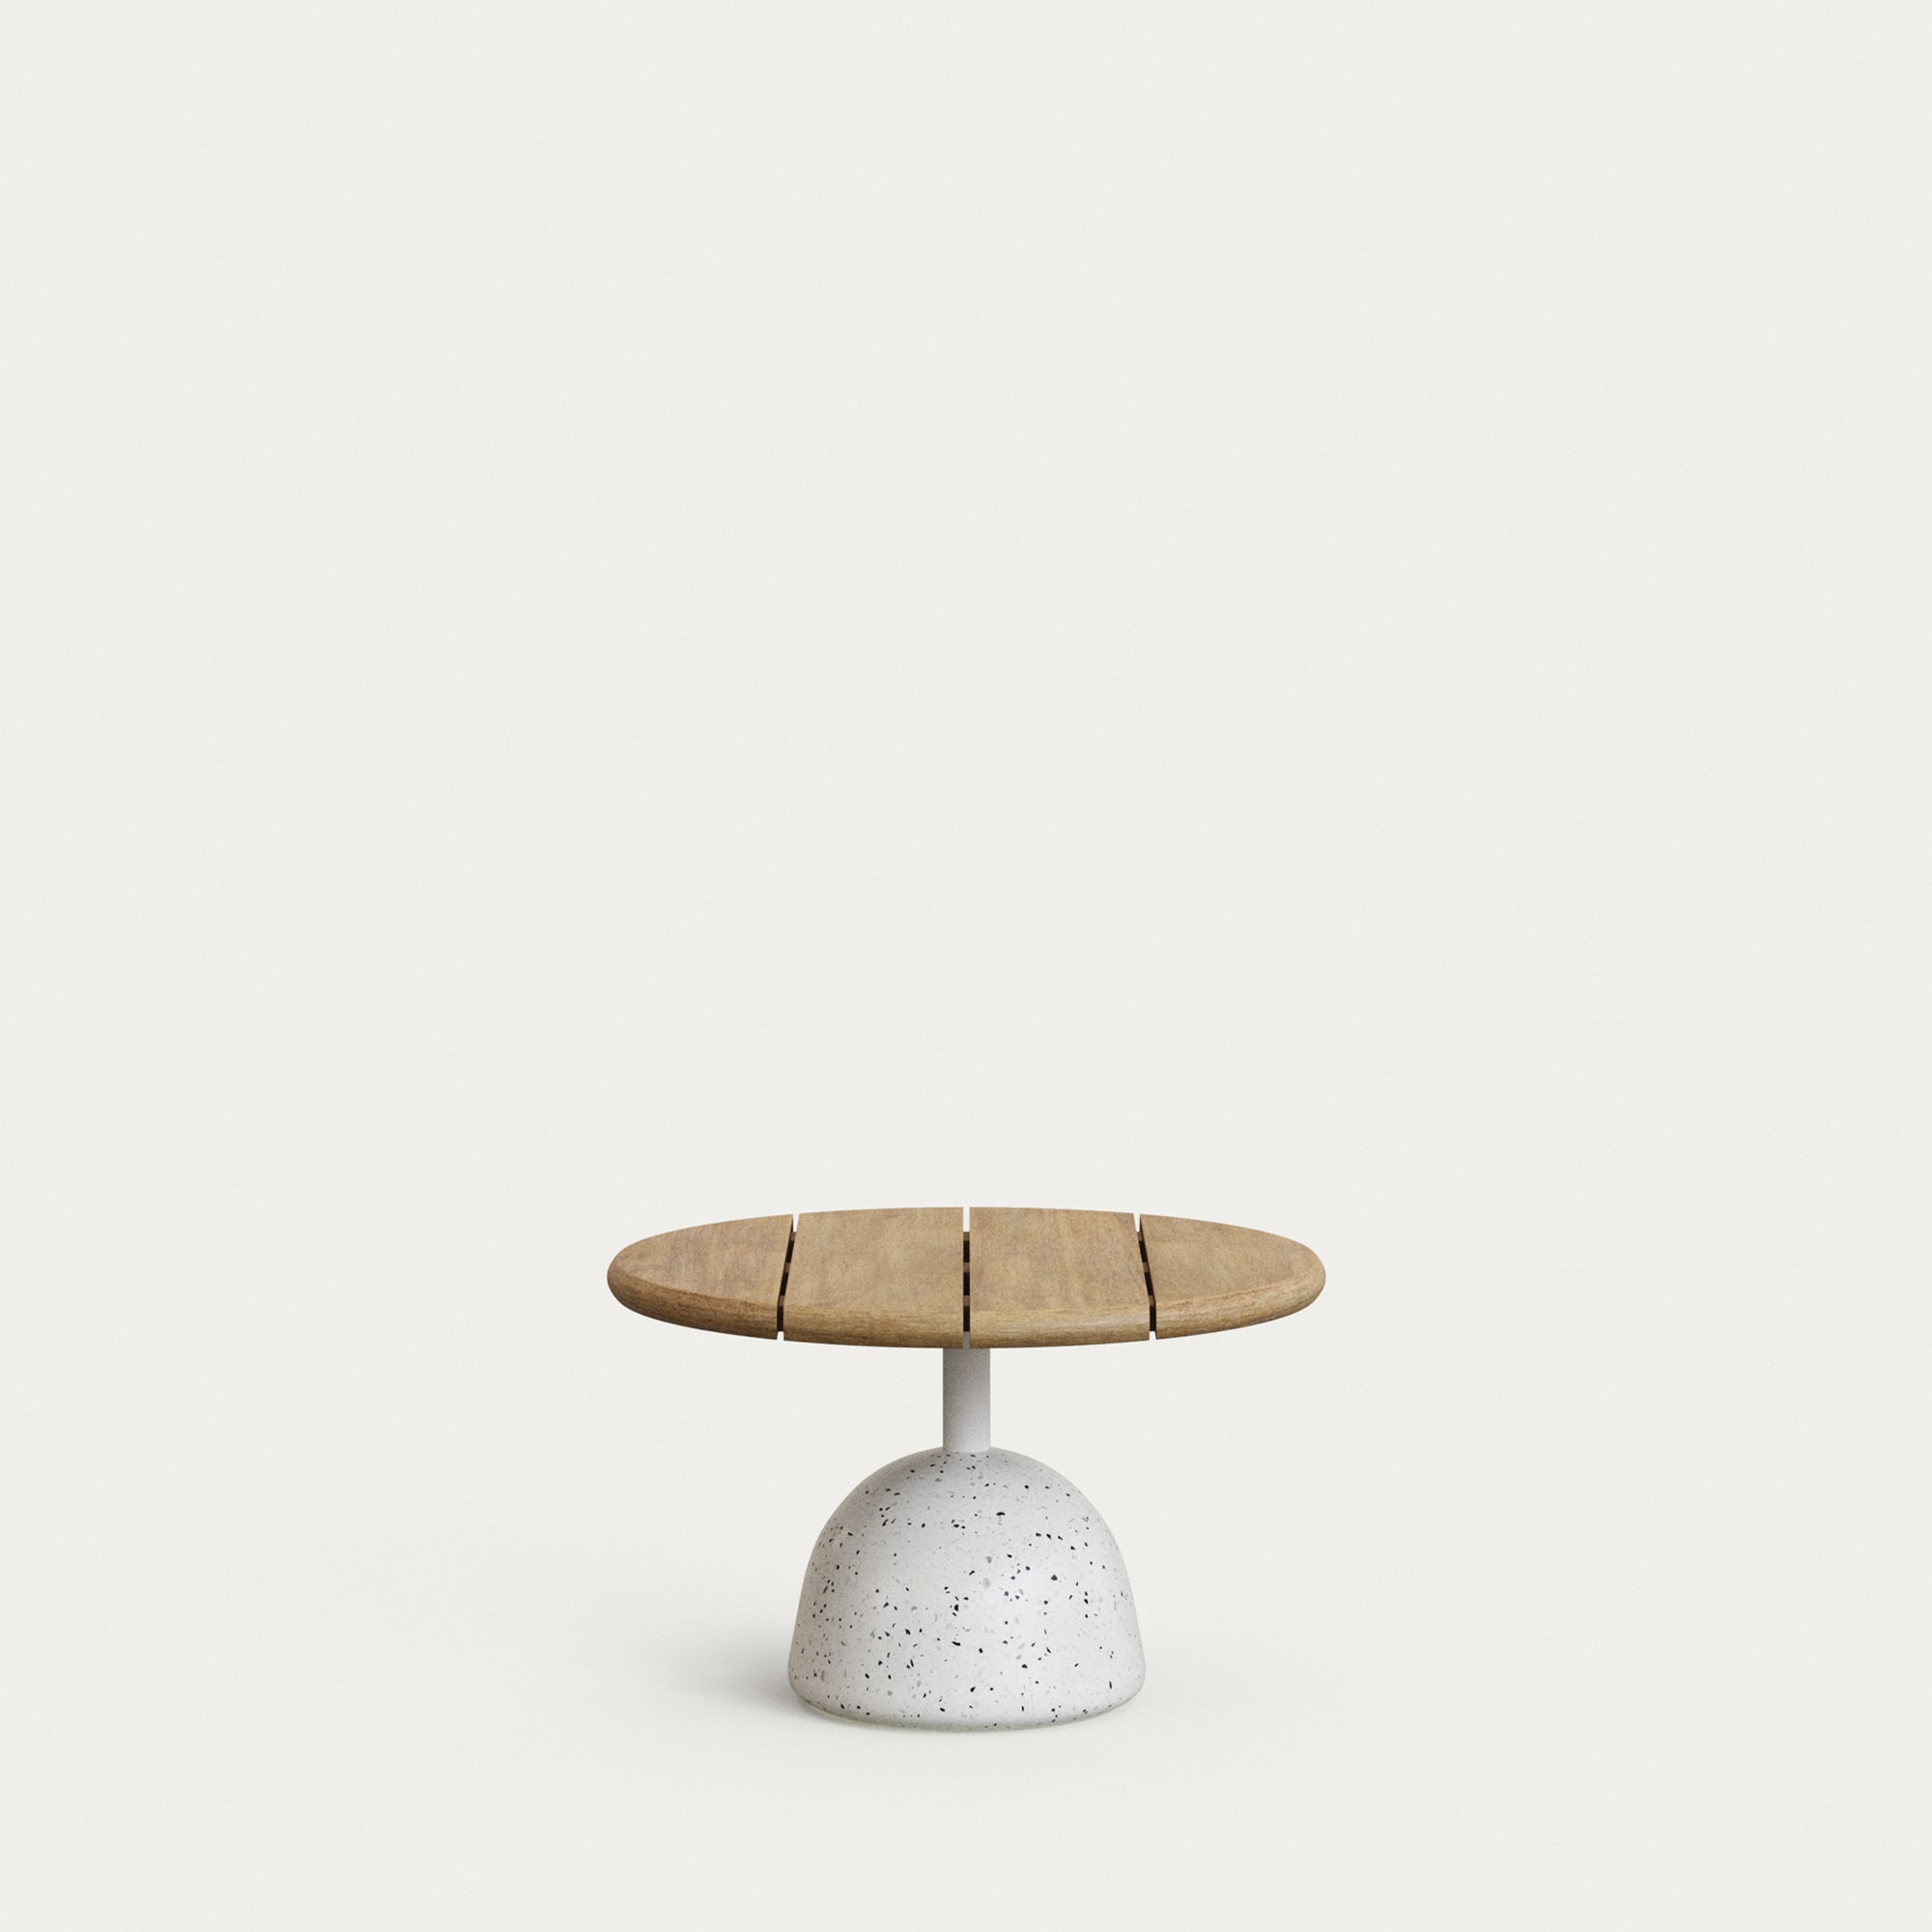 Saura kávézóasztal fehér terrazzóval és természetes akácia tetejével, 32 x 55 cm